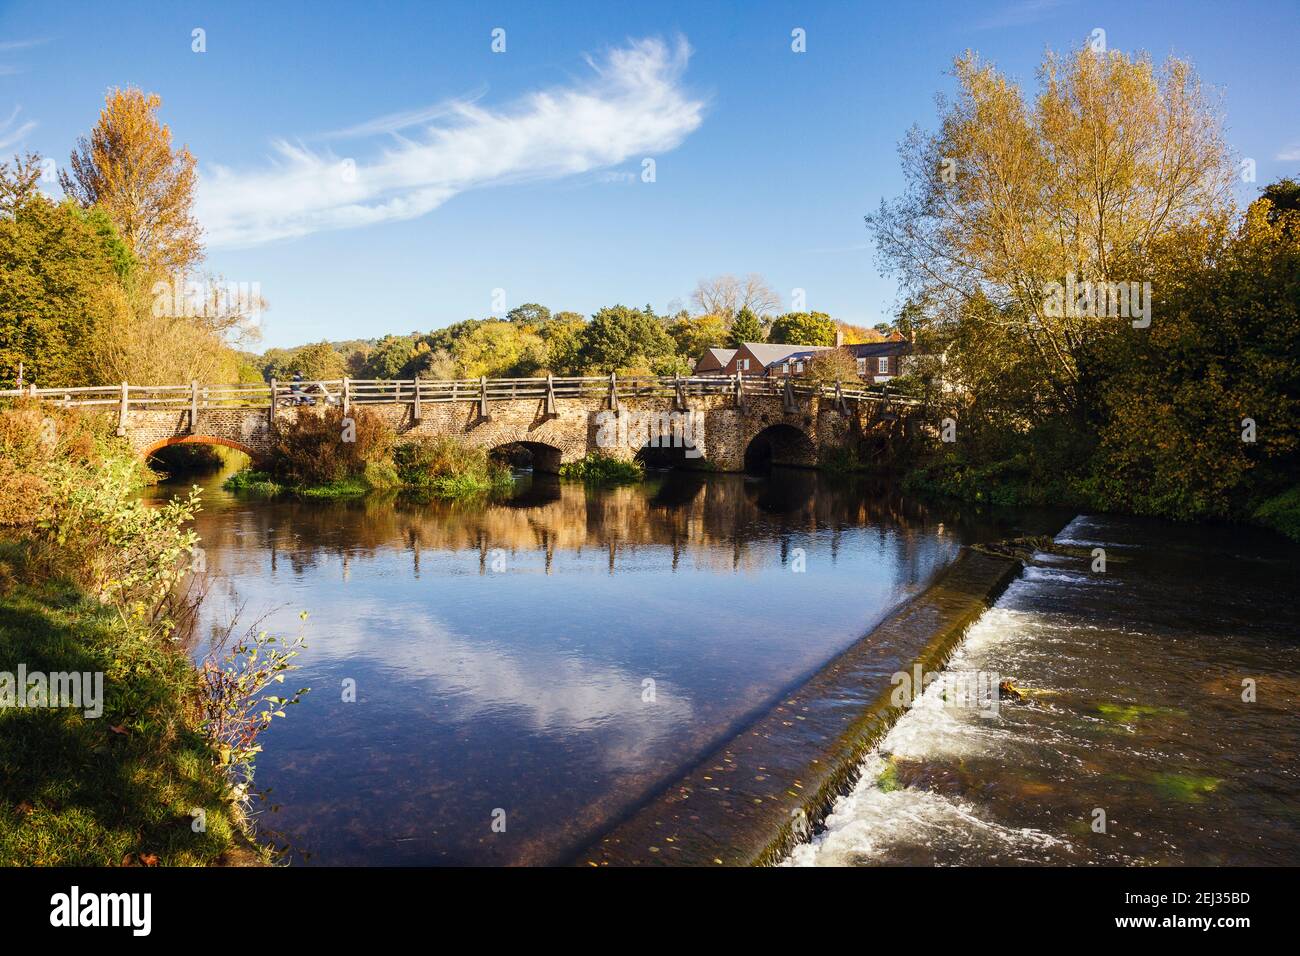 Vieux pont est un pont médiéval à cheval sur la rivière Wey par la ford dans un village historique en automne. Tilford Surrey Angleterre Royaume-Uni Grande-Bretagne Banque D'Images